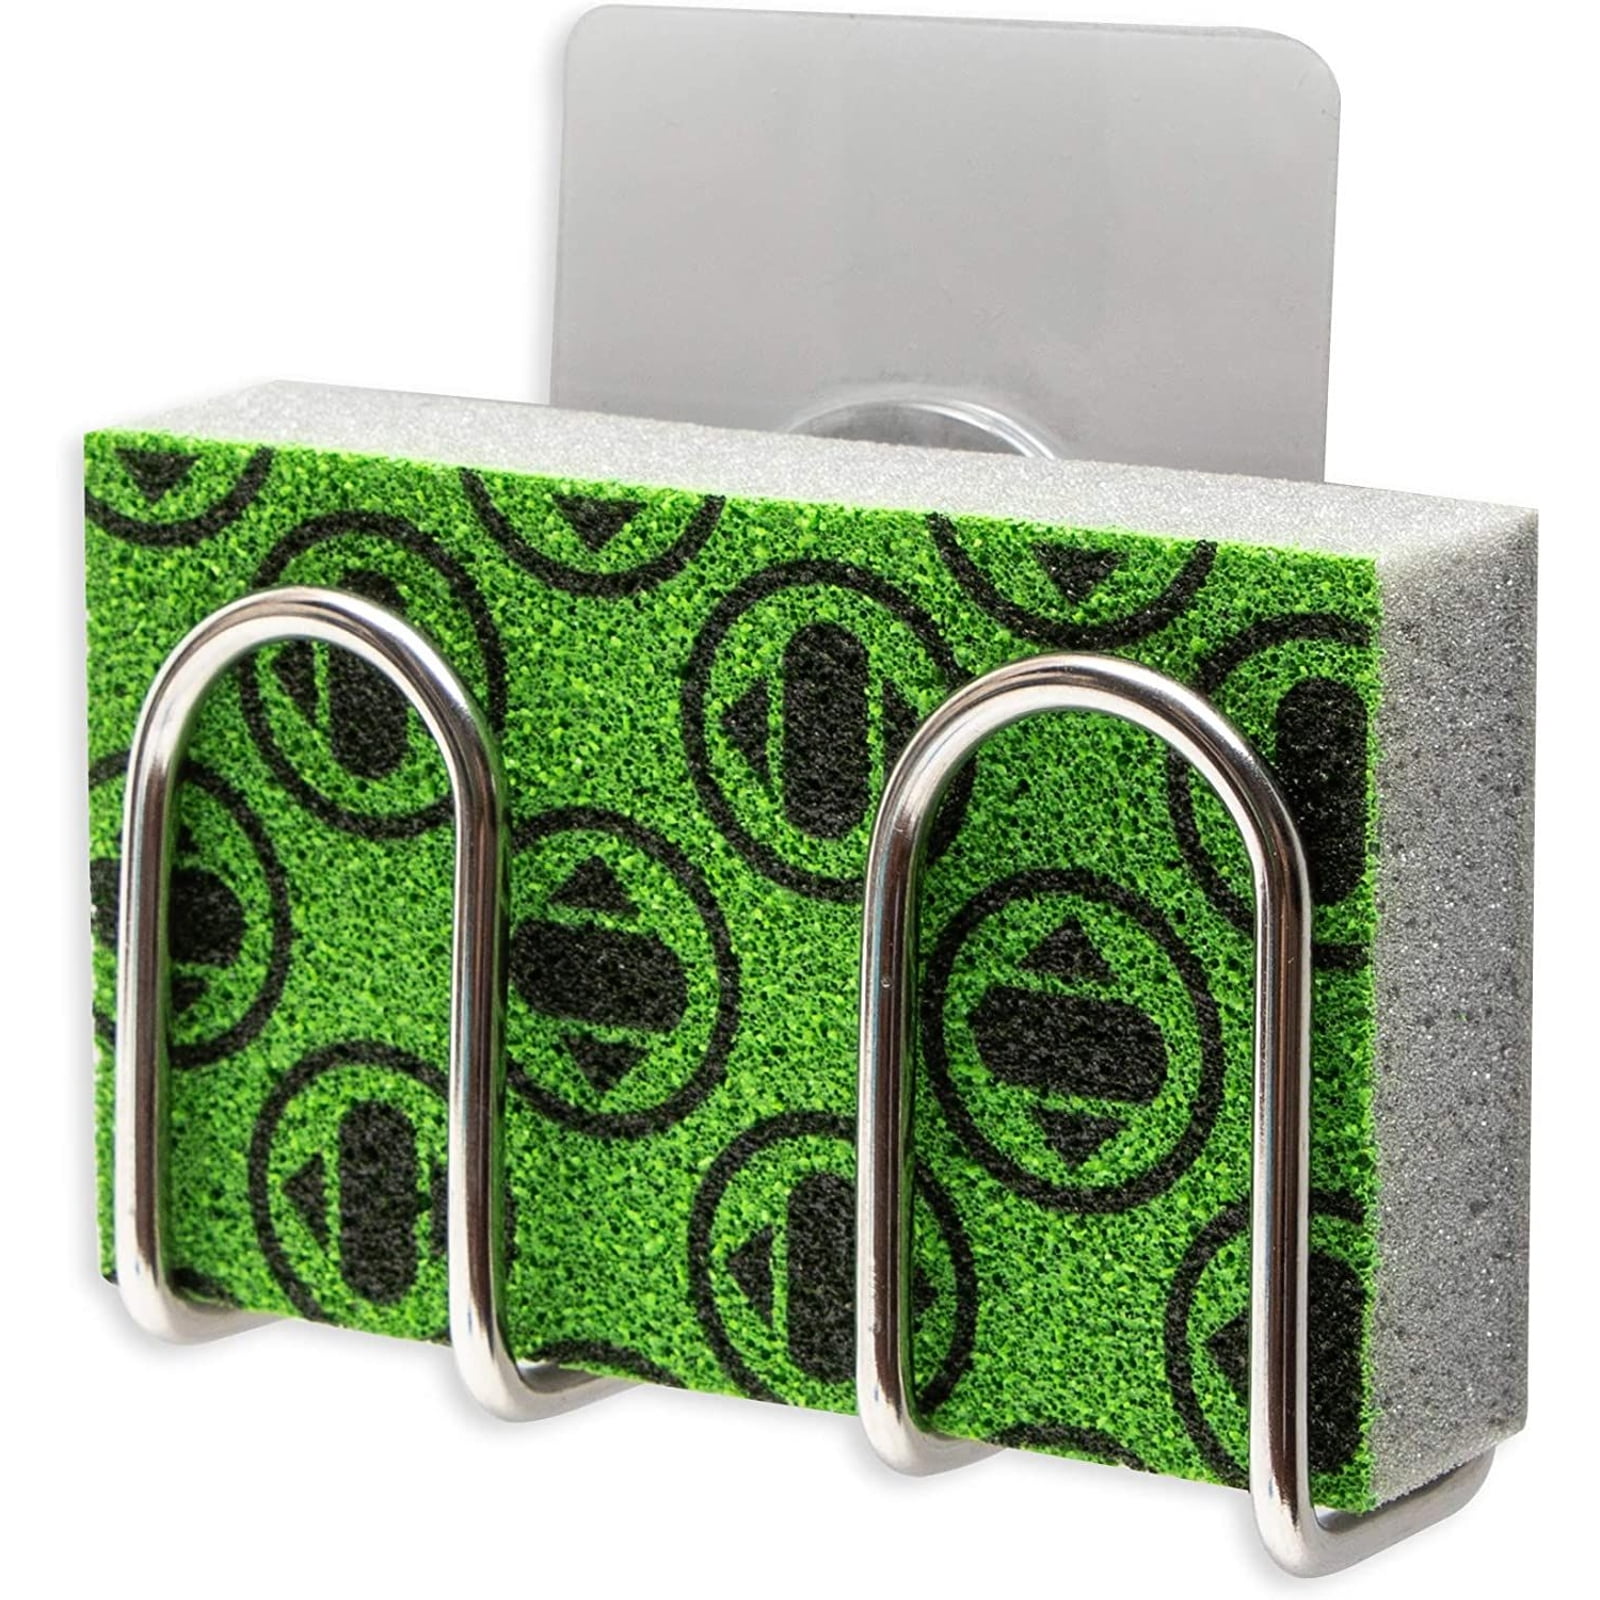 Soap Sponge Holder mDesign Metal Wire Kitchen Sink Storage Caddy 